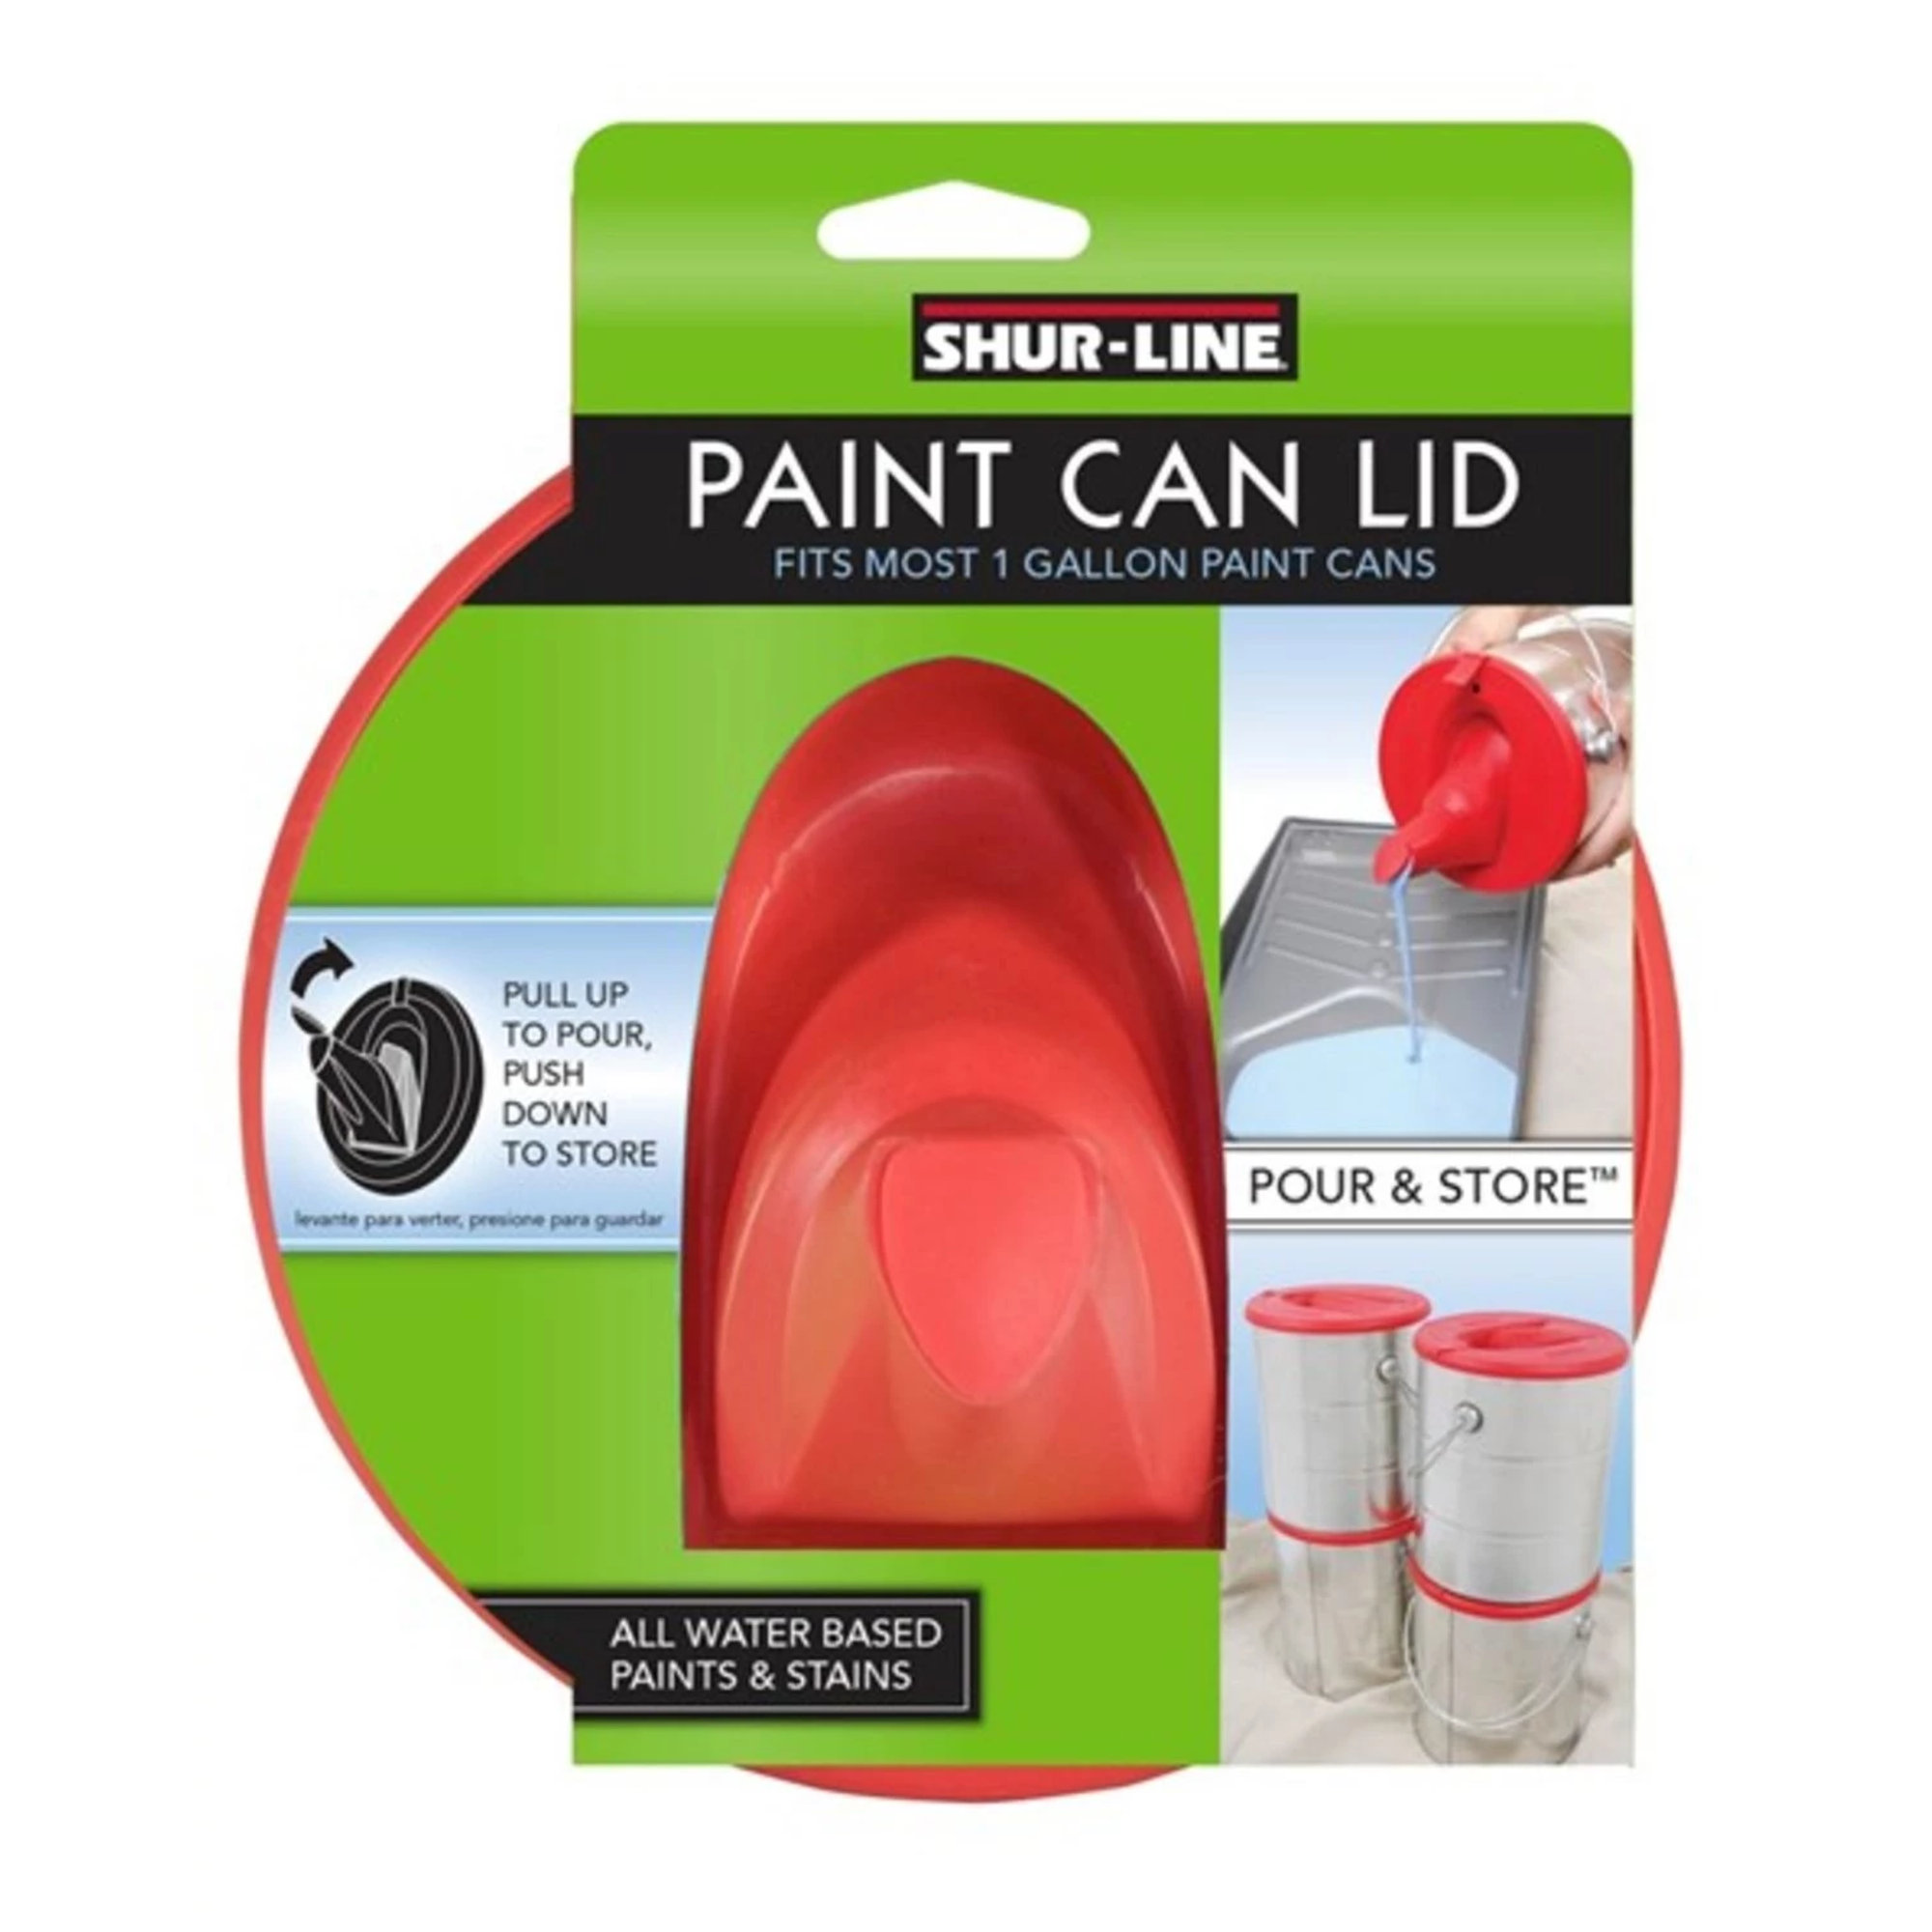 Store & Pour Paint Can Lid, 1-Gallon